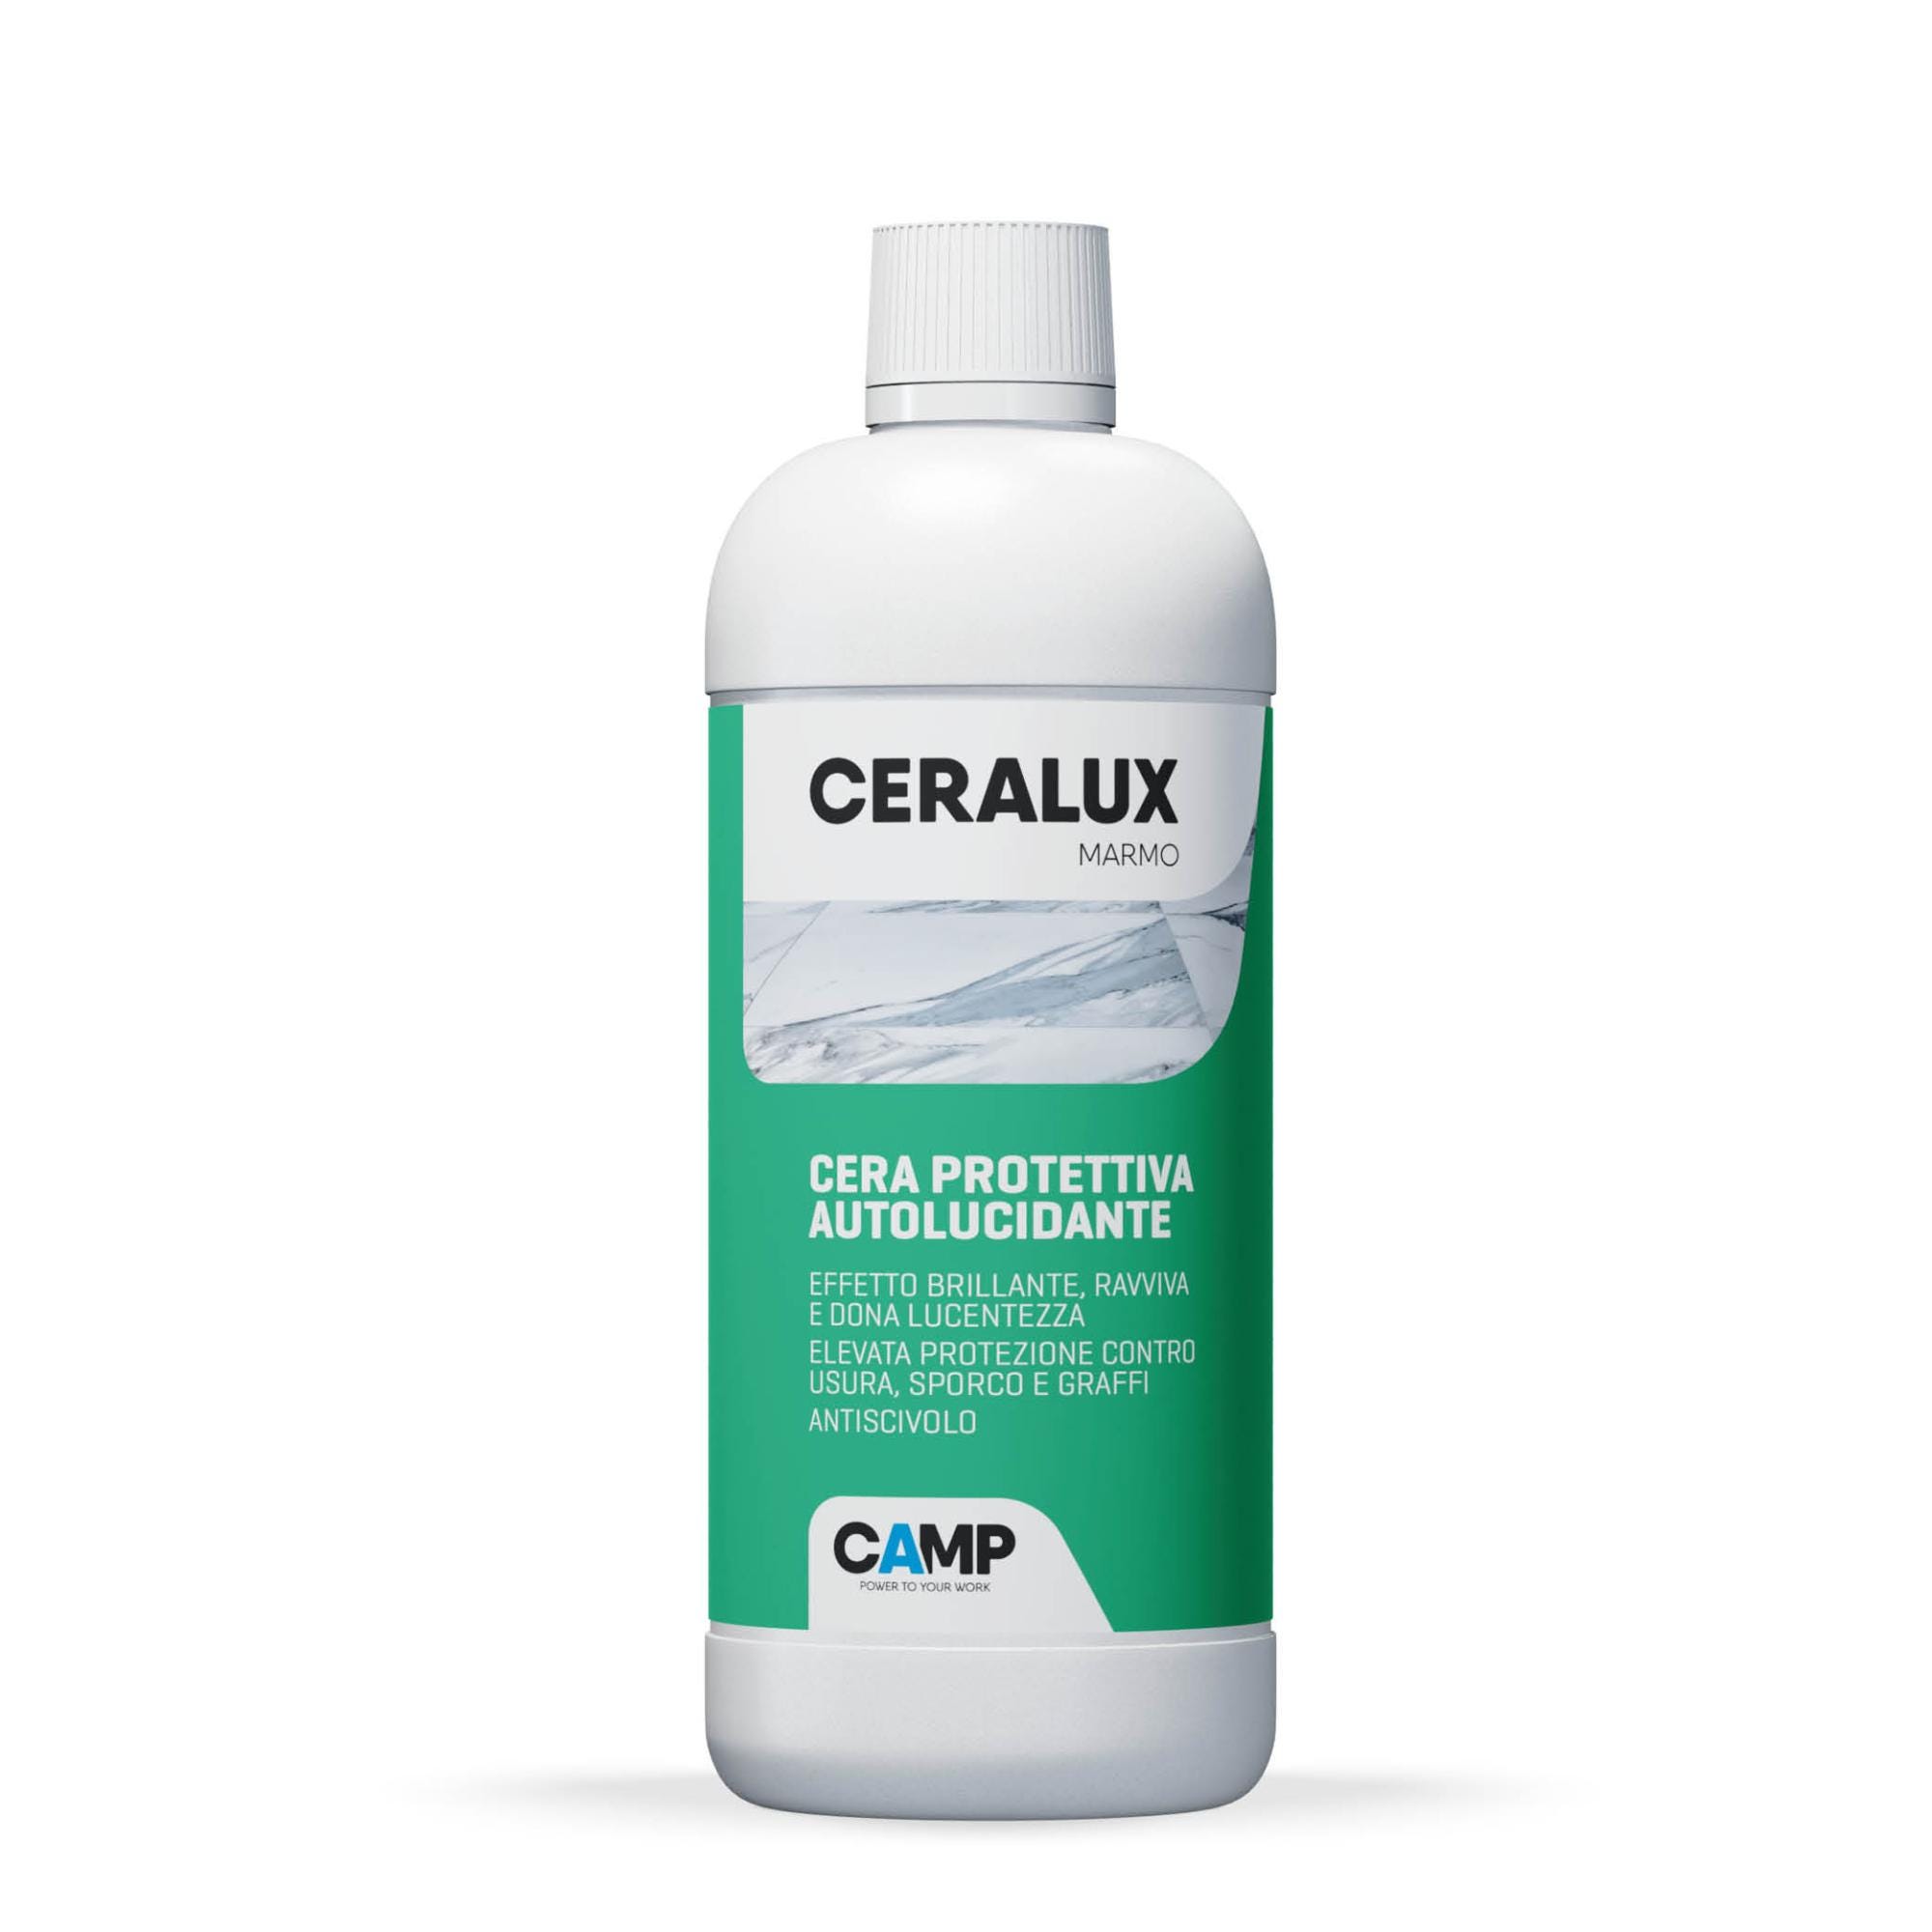 Camp CERALUX Marmo, Cera metallizzata autolucidante protettiva specifica  per marmo, Anti-graffio, A elevata concentrazione